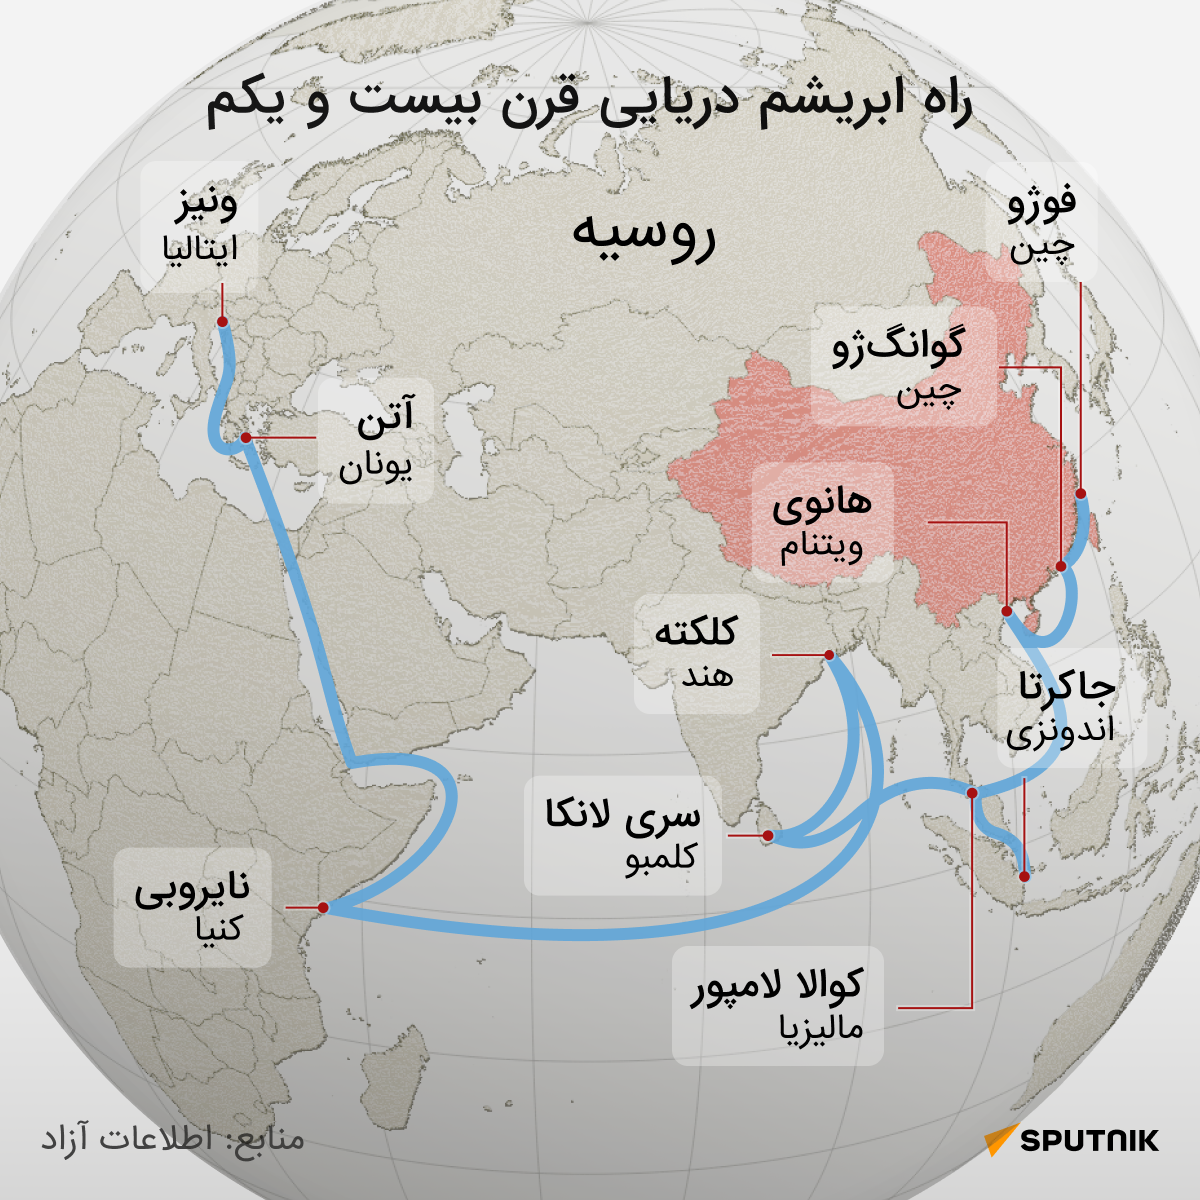  راه ابریشم دریایی قرن بیست و یکم - اسپوتنیک ایران  